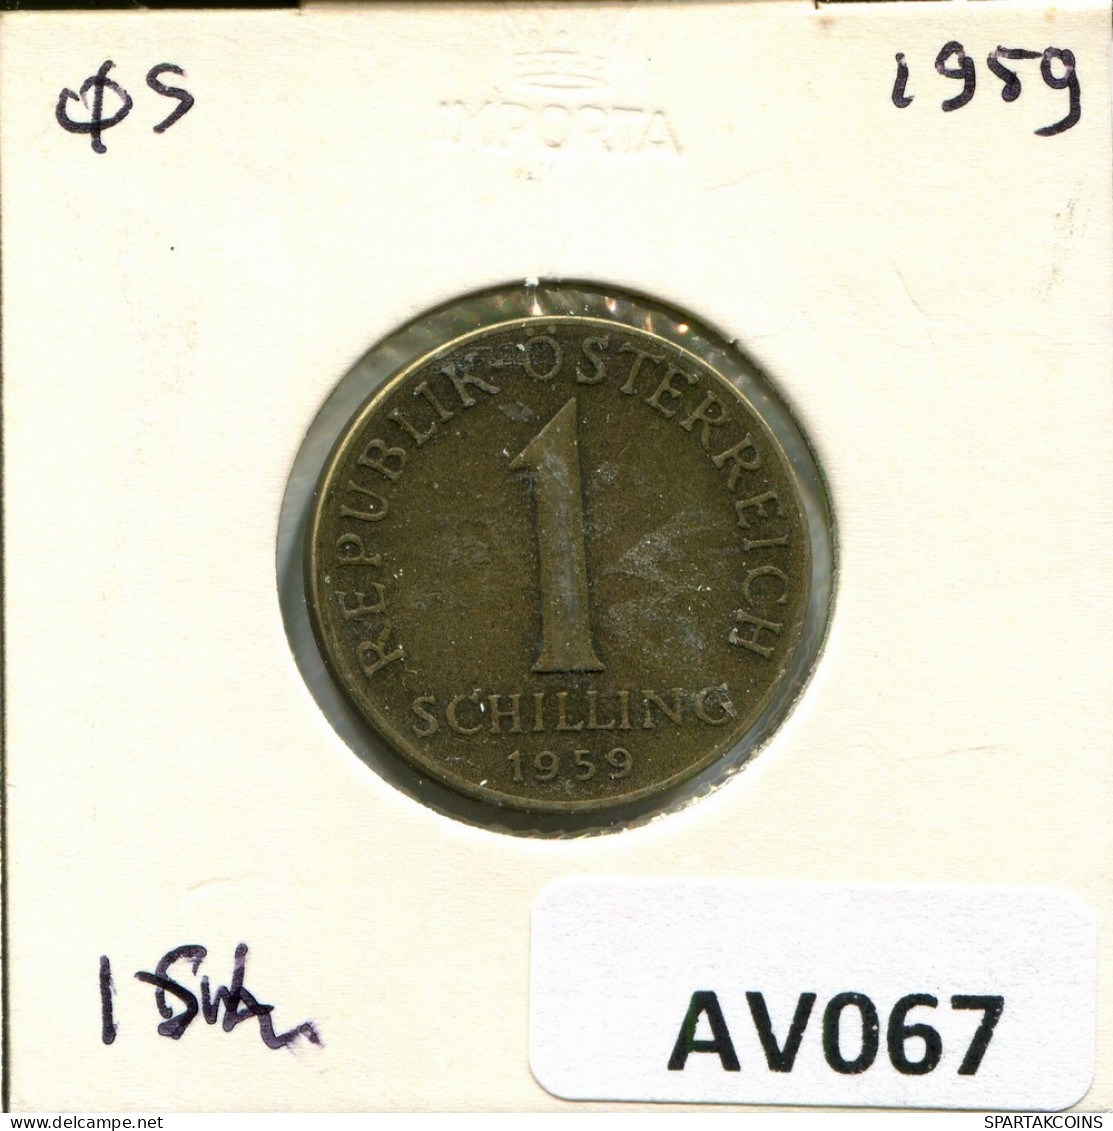 1 SCHILLING 1959 AUSTRIA Coin #AV067.U.A - Oesterreich